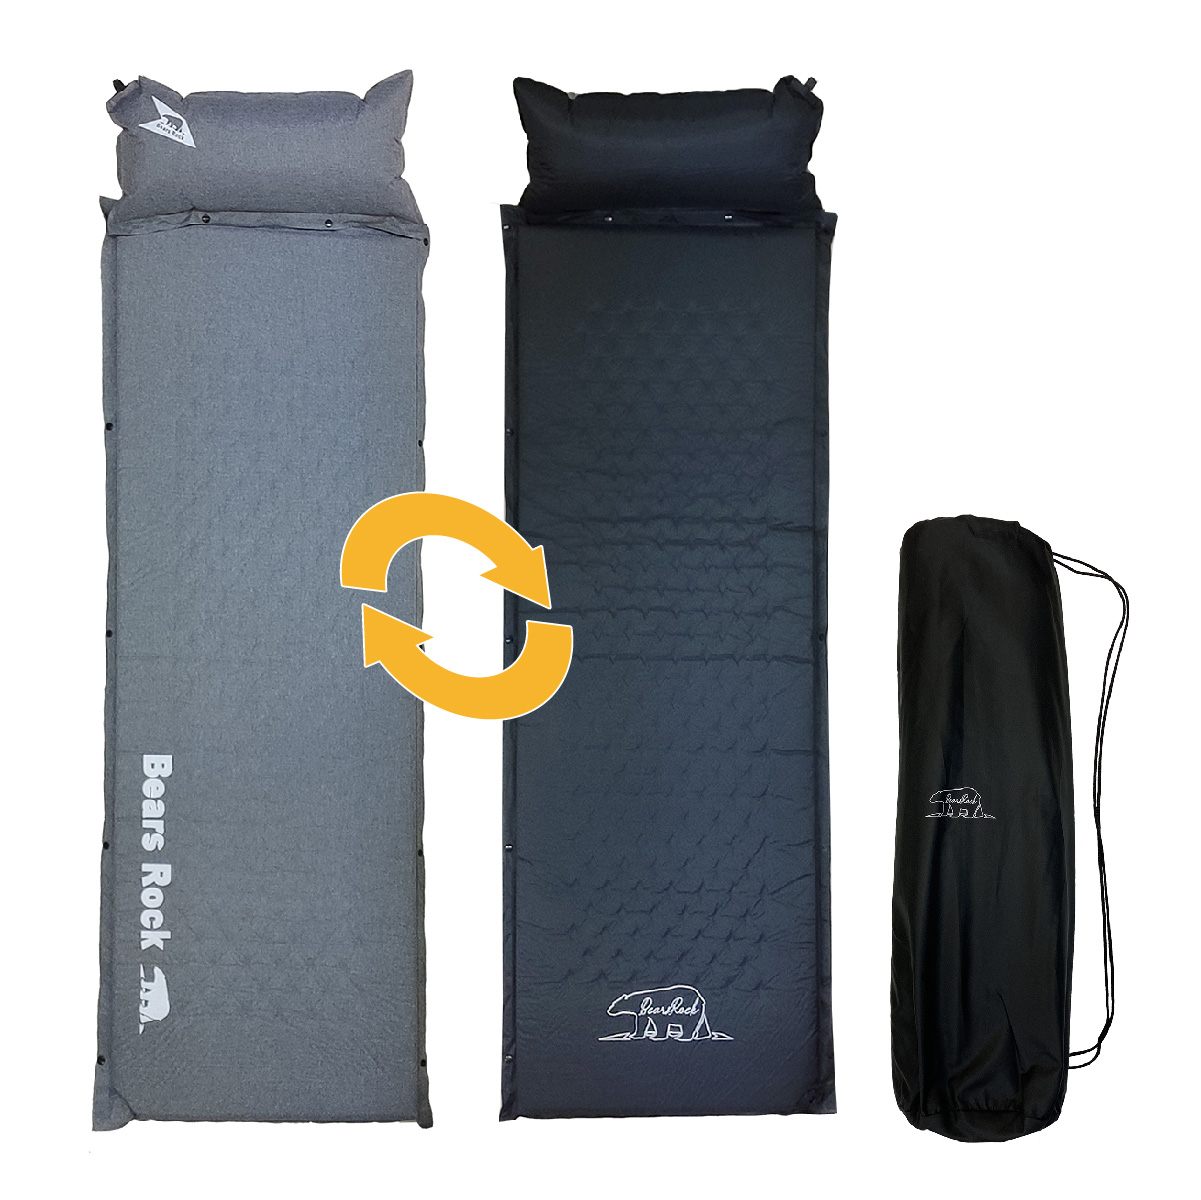 キャンピングマット スリーピングマット 車中泊 エアー マット キャンプ インフレータブル 枕まで心地よい 自動膨張 弾力 寝袋 枕付き Bears  Rock 5cm MT-105F